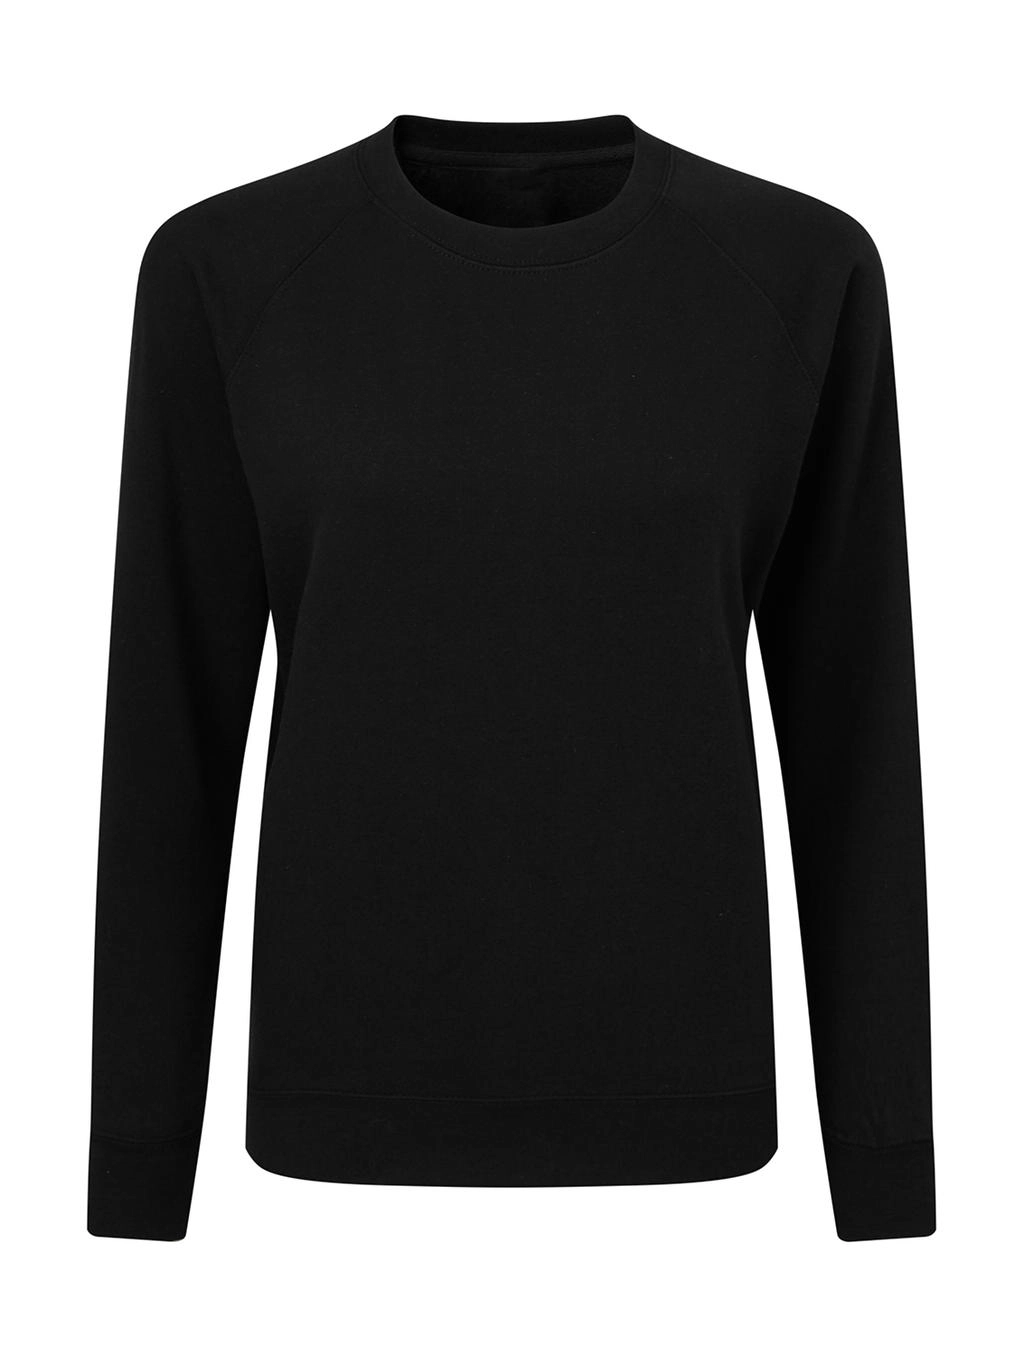 Raglan Sweatshirt Women zum Besticken und Bedrucken in der Farbe Black mit Ihren Logo, Schriftzug oder Motiv.